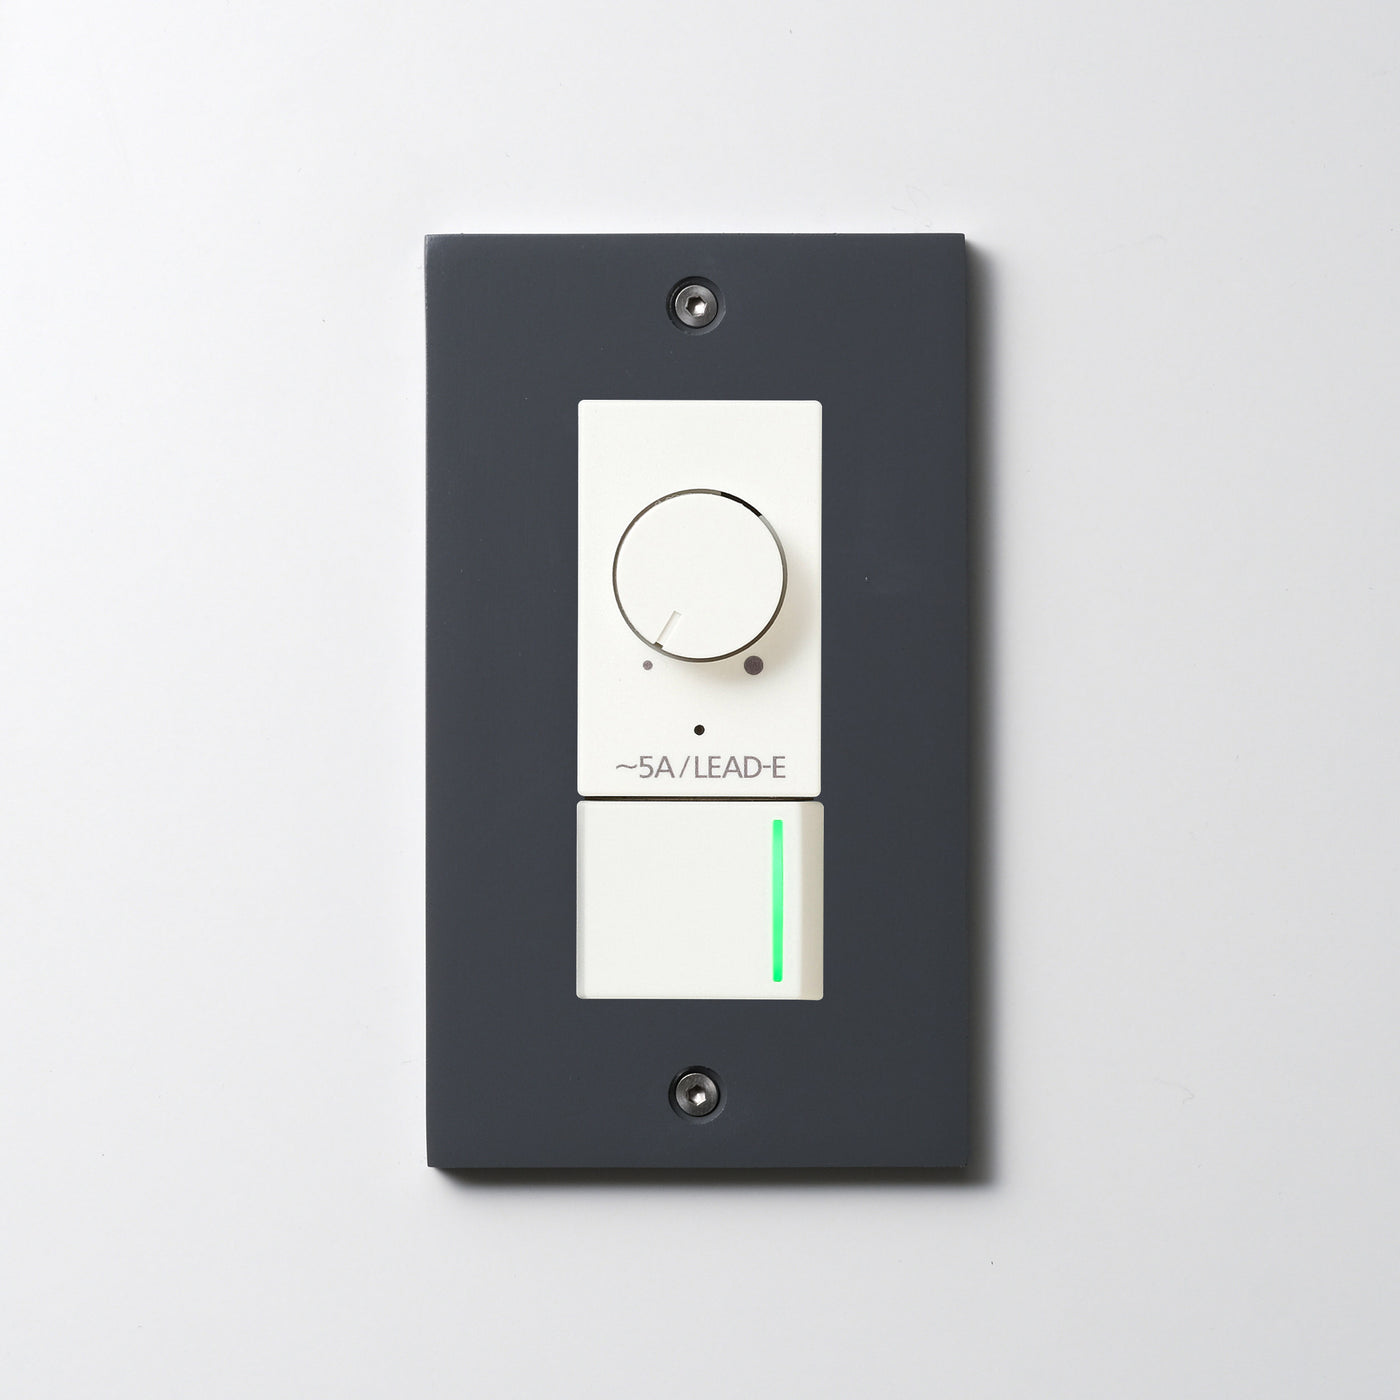 アルミダイキャスト（グレー）プレート <br>+ NK 正位相制御方式ライトコントロール＋片切、3路ガイドランプ（グリーン）スイッチ　 ホワイト